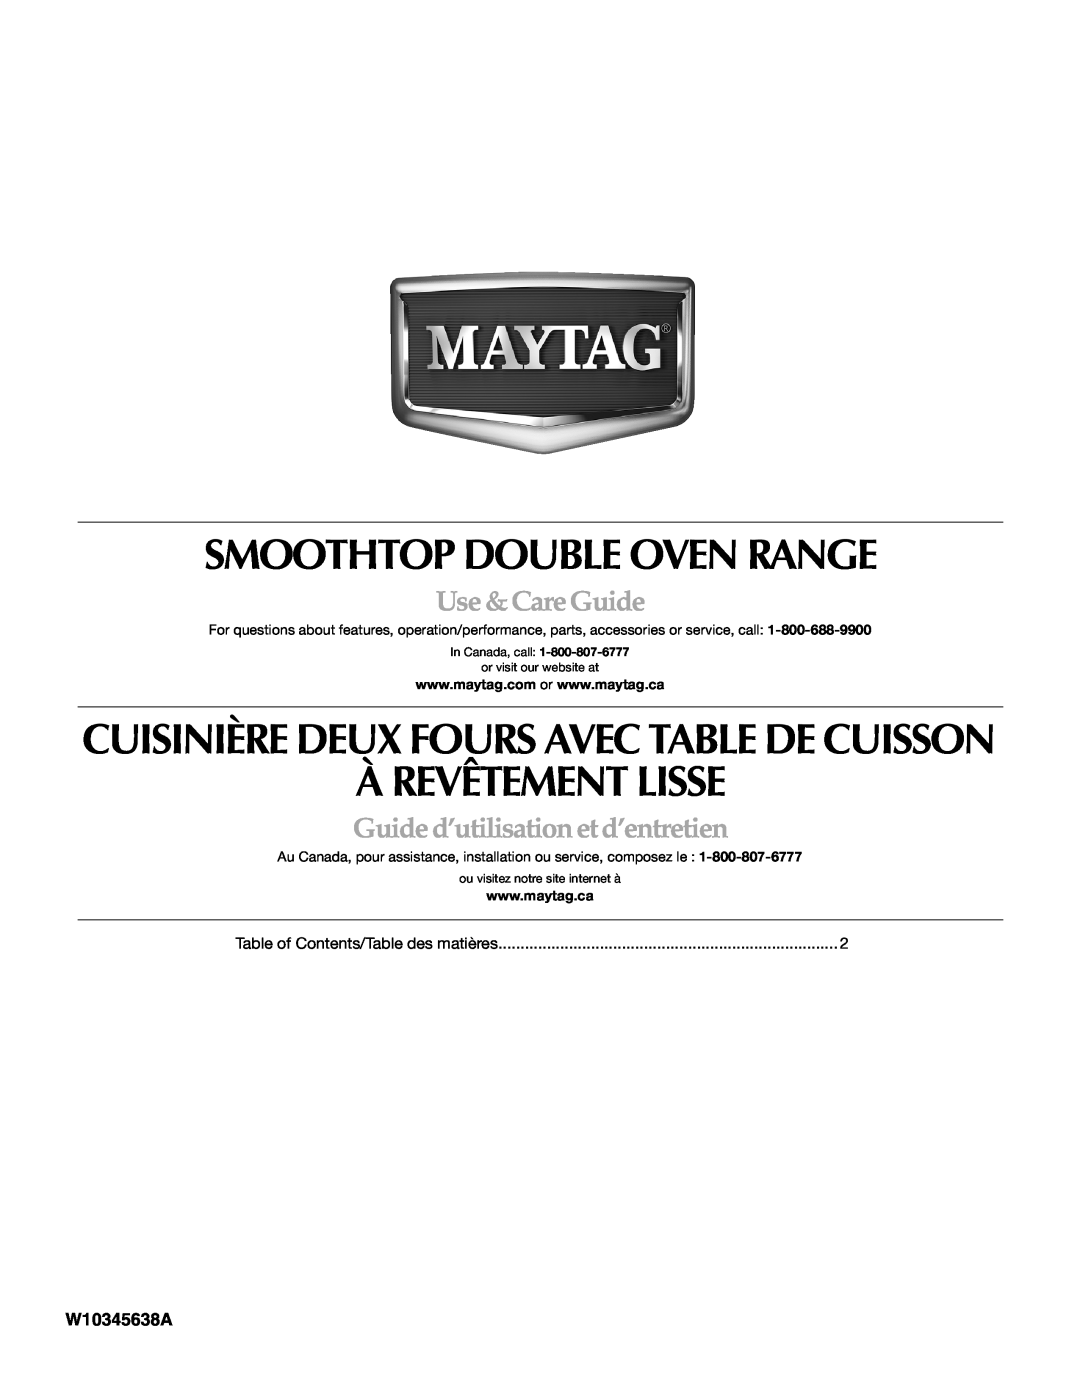 Maytag W10345638A manual Smoothtop Double Oven Range, À Revêtement Lisse, Cuisinière Deux Fours Avec Table De Cuisson 